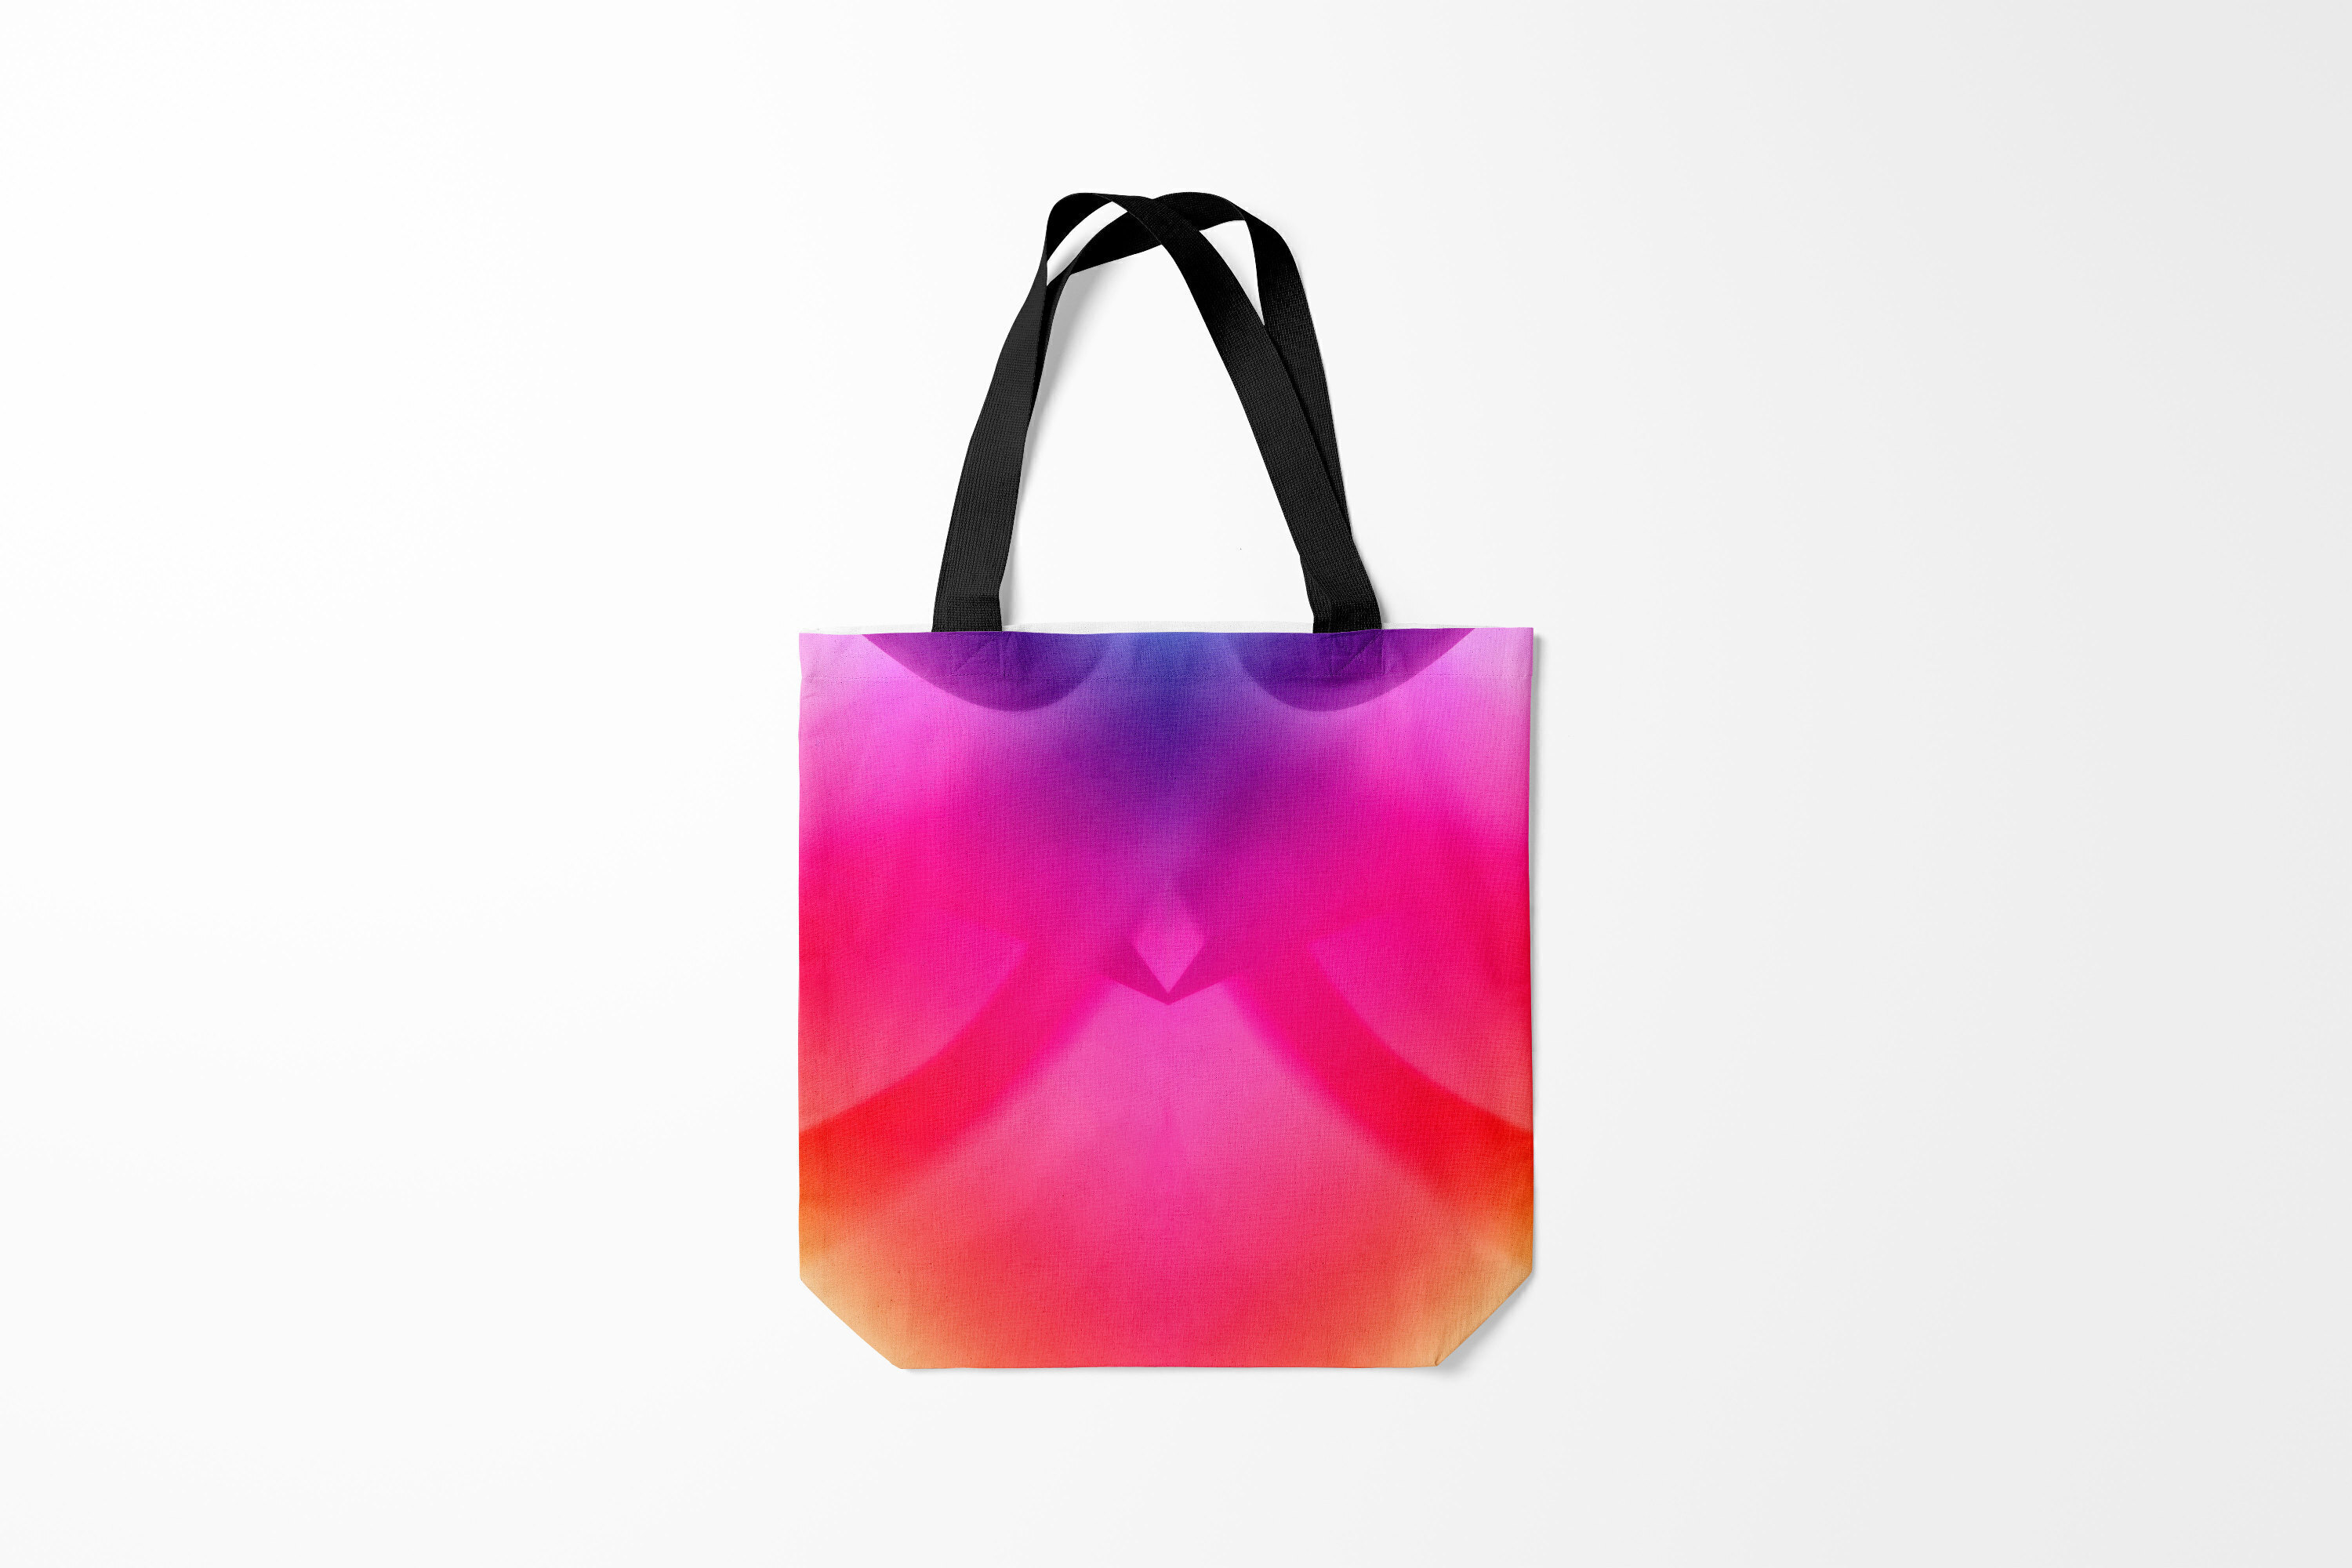 Унисекс сумка Burnettie со спектральной радужной расцветкой.